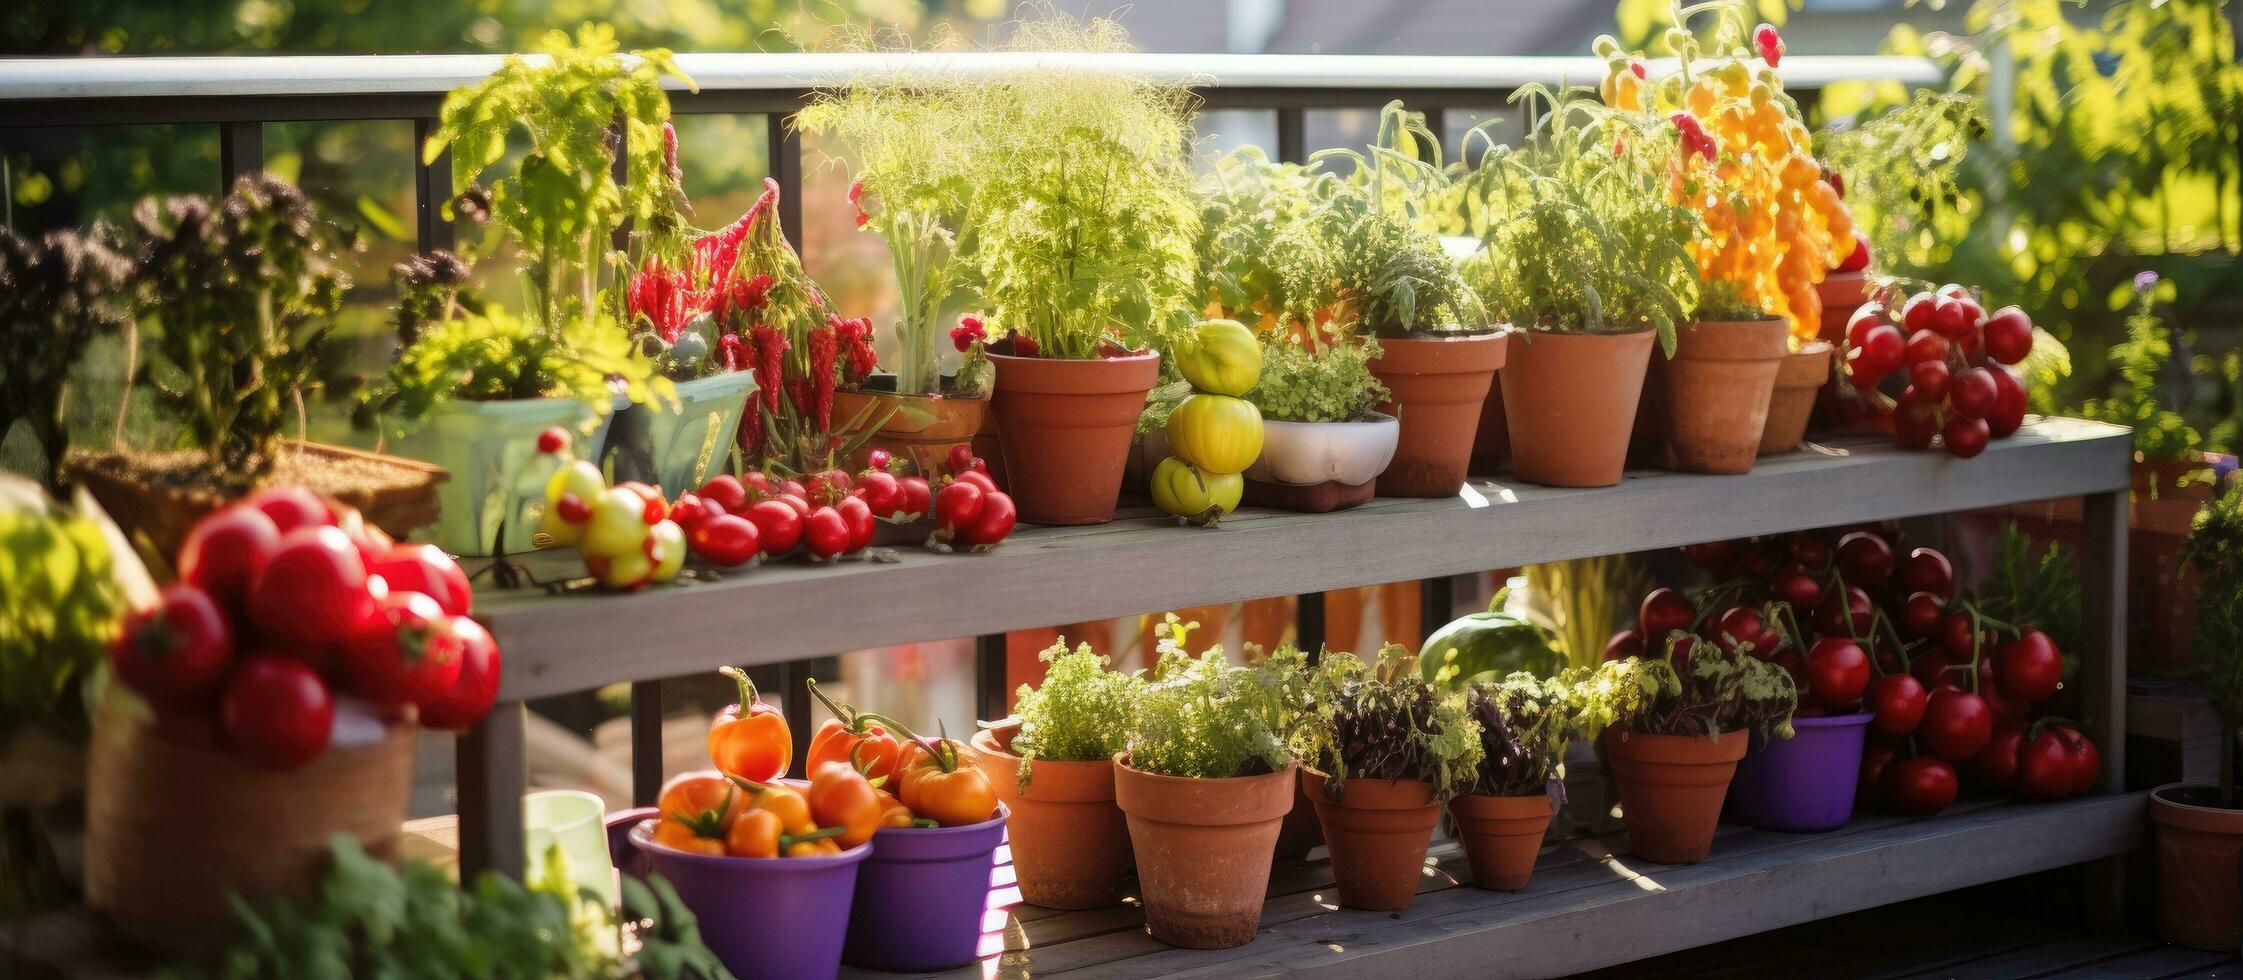 een balkon met divers ingemaakt planten Leuk vinden kers tomaten lavendel prei selderij en aardbeien foto